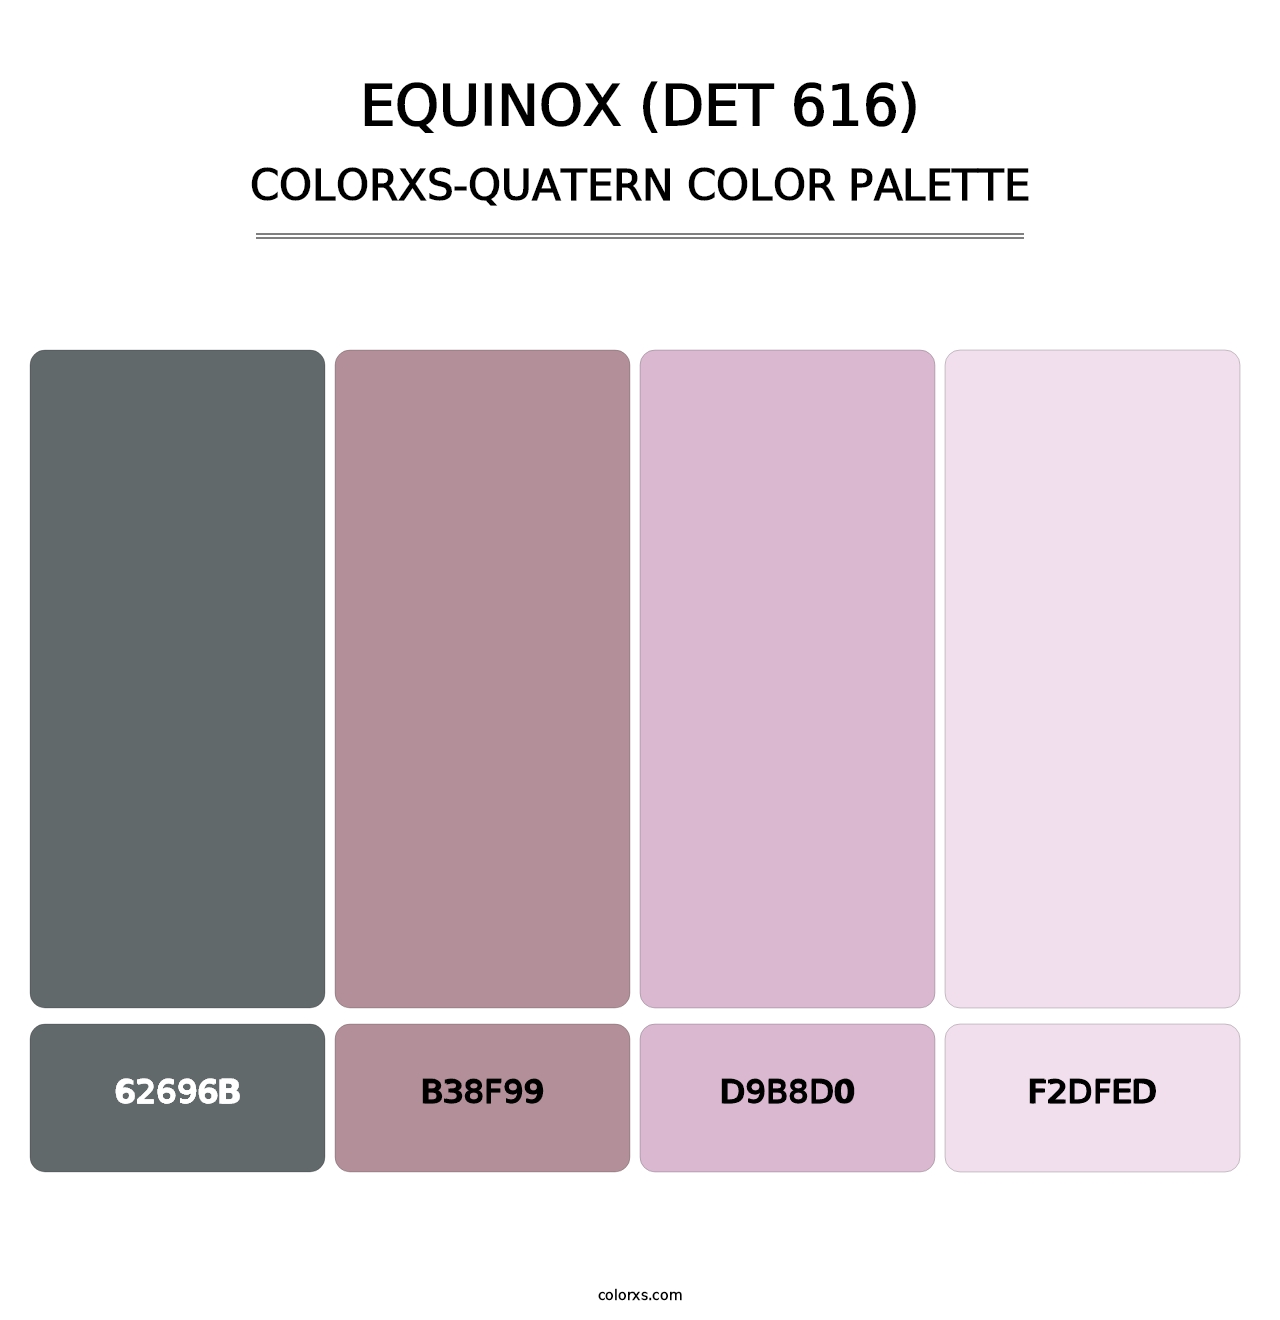 Equinox (DET 616) - Colorxs Quatern Palette